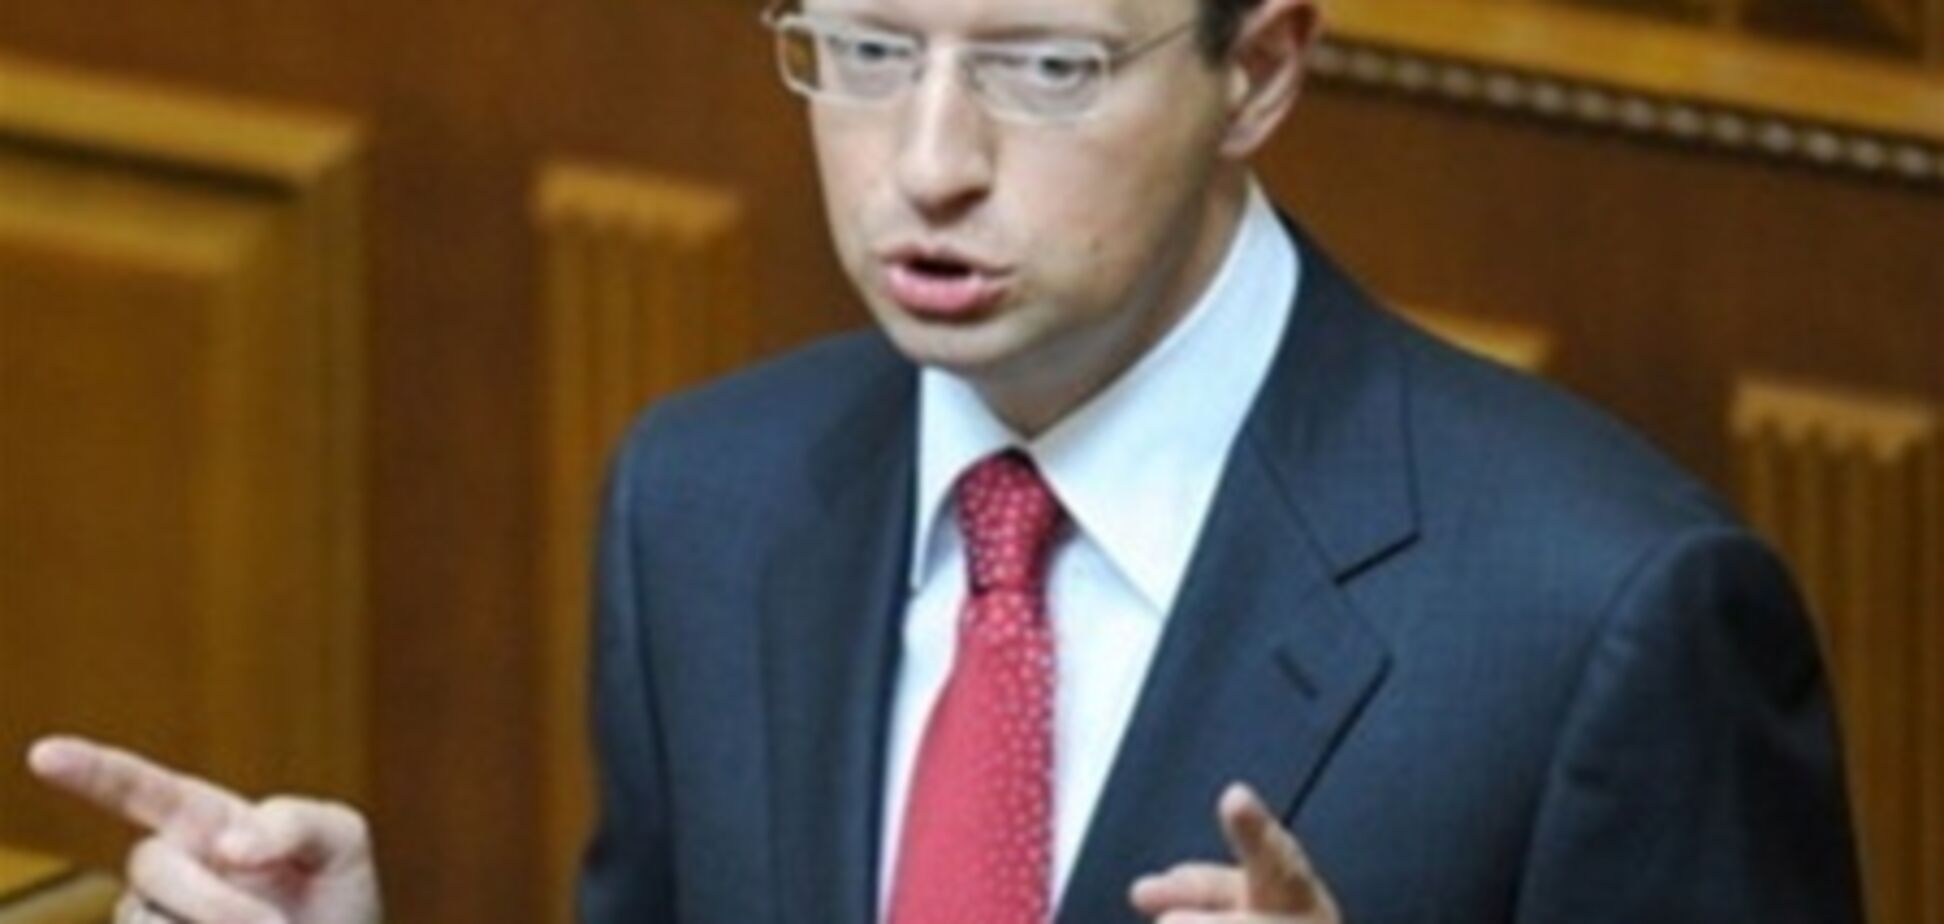 Яценюк родился с бирочкой 'кандидат в президенты' - политолог